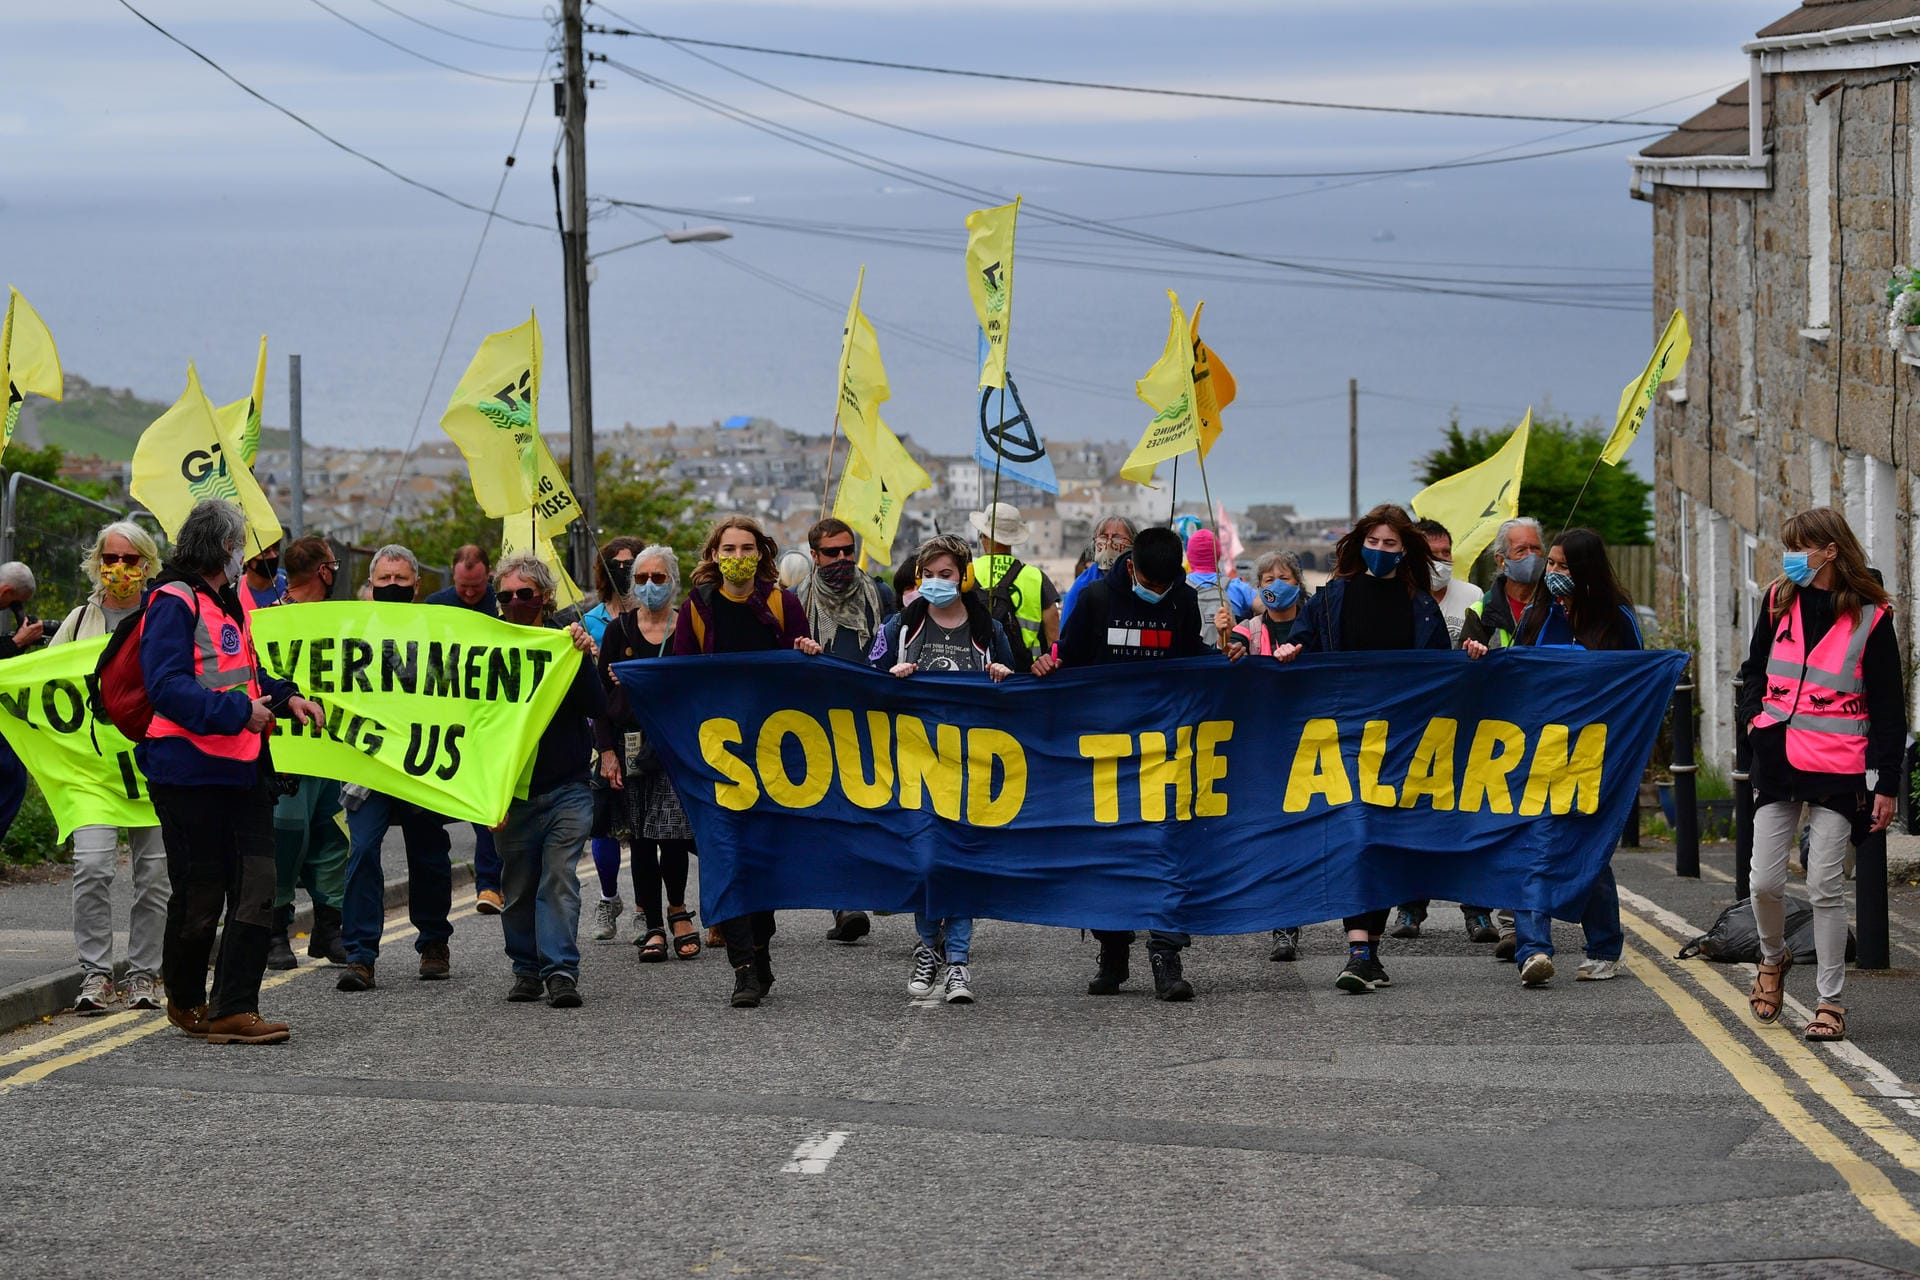 Das Motto der Auftaktdemonstrationen am Freitag lautete "Sound the Alarm", zu Deutsch "Schlagt Alarm". Da der Veranstaltungsort des G7-Gipfels in Carbis Bay großräumig abgesperrt ist, weichen die Demonstranten auf die Nachbarorte aus, wie hier in St Ives. Auch in Falmouth, Truro und den größeren Städten Plymouth und Exeter finden Proteste statt.